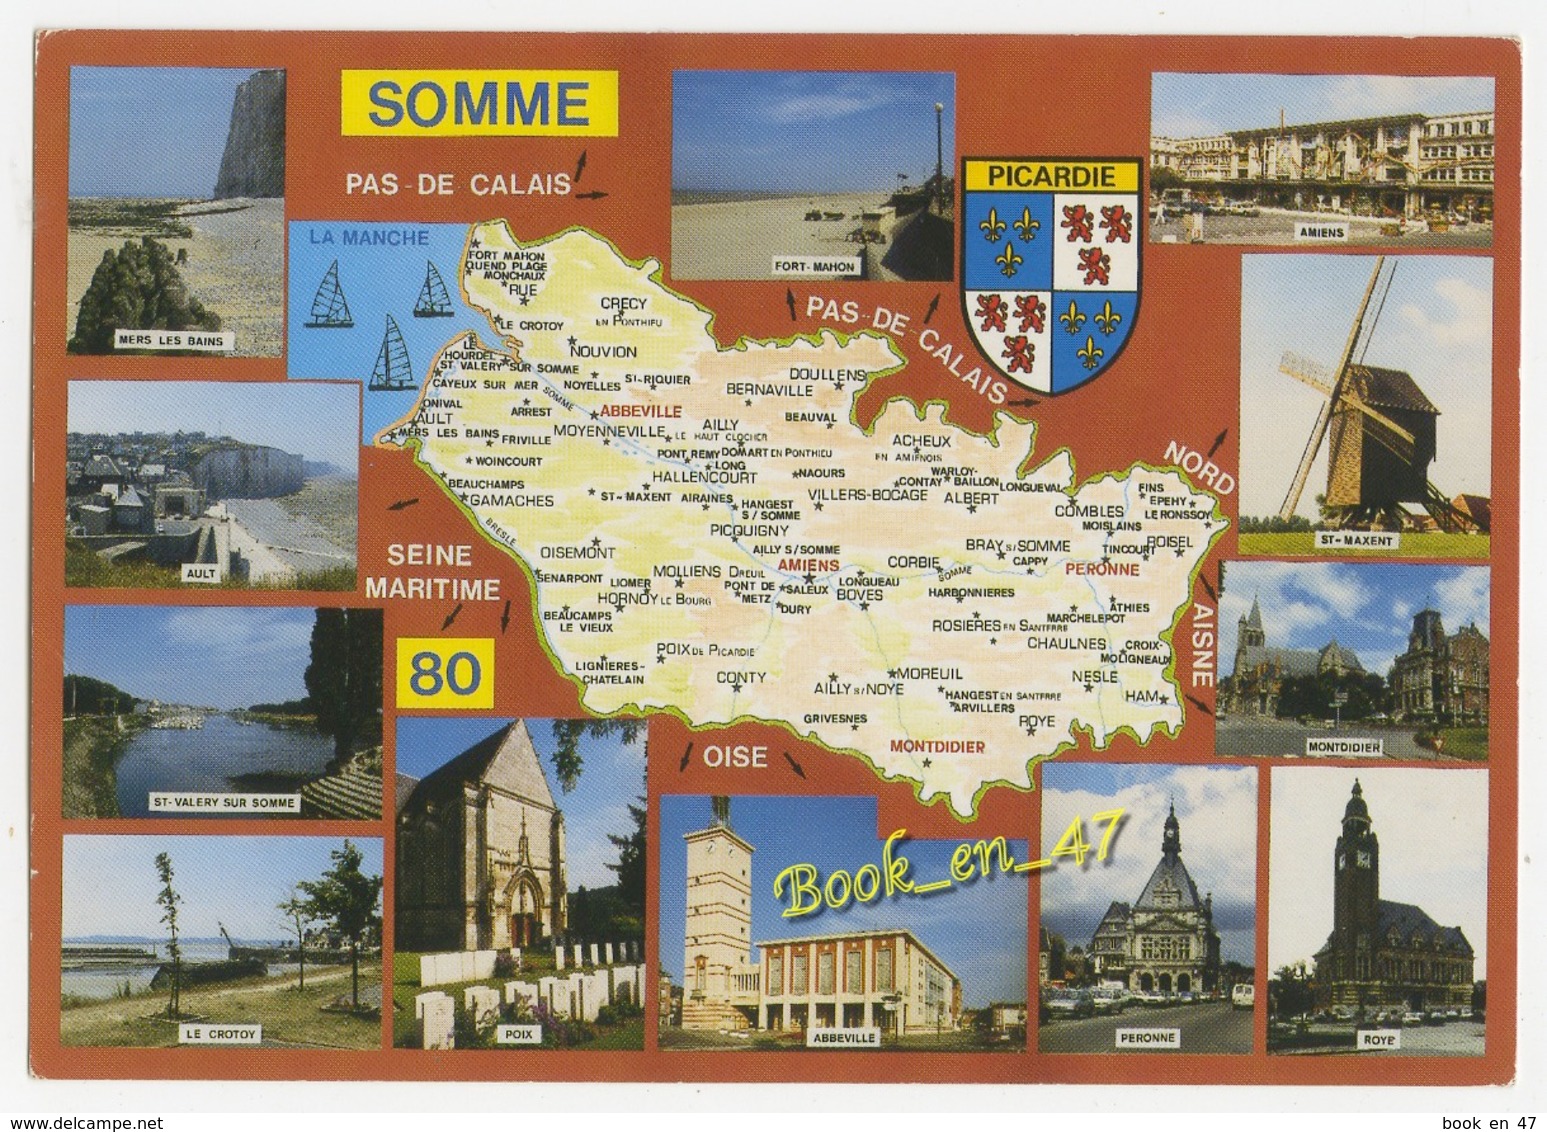 {79805} 80 Somme , Carte Et Multivues ; Mers Les Bains , Amiens , Montdidier , Ault , Le Crotoy , Poix , Abeville - Cartes Géographiques